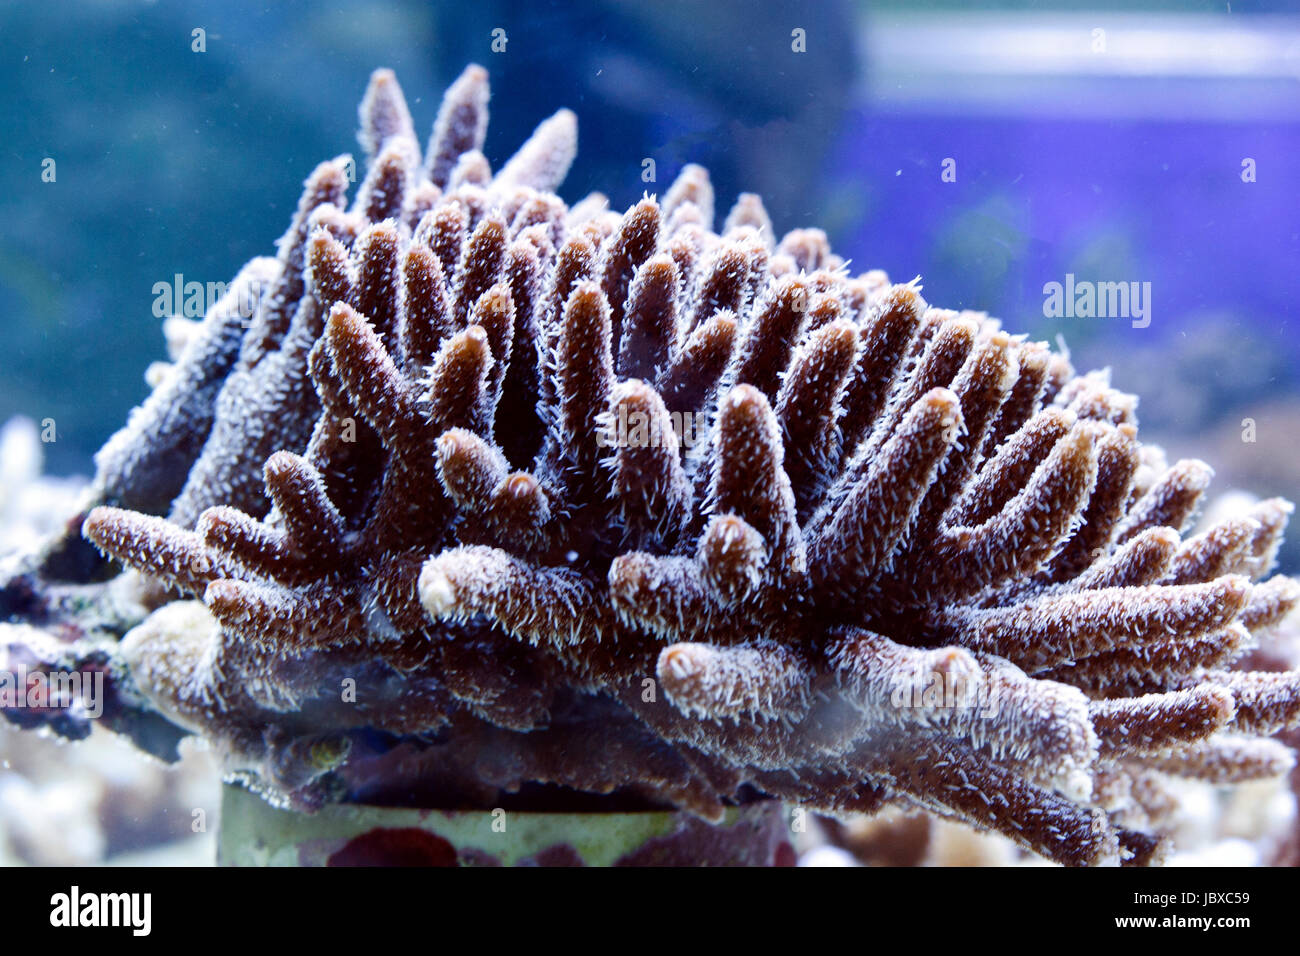 coral scene in reef aquarium Stock Photo